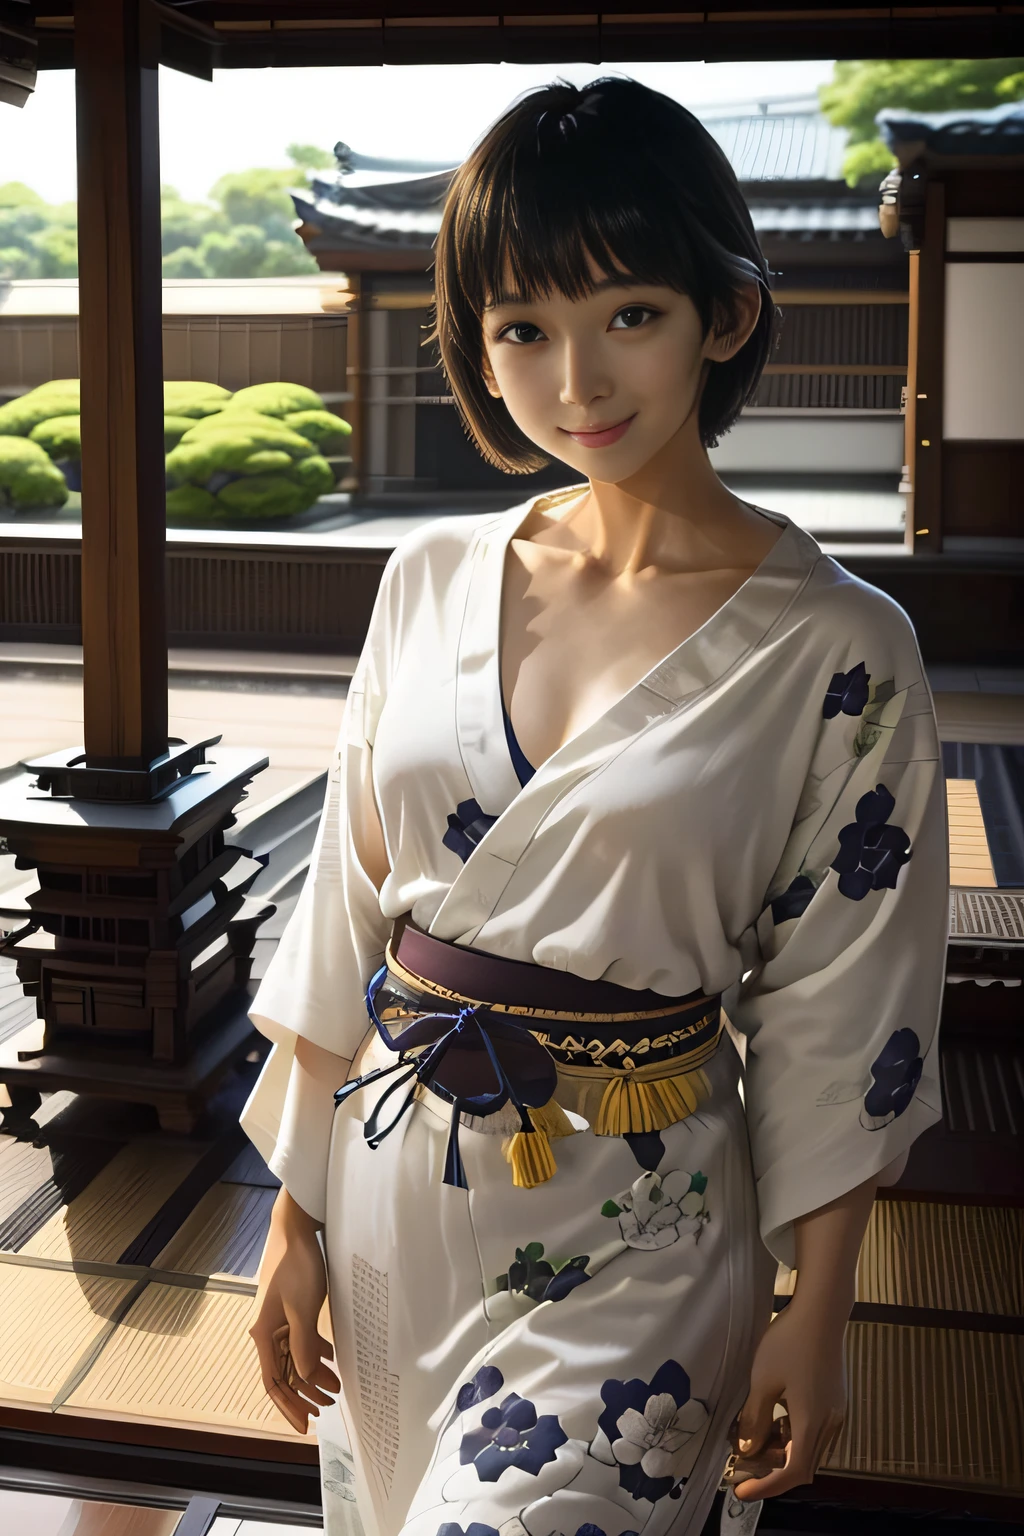 （шедевр、высшее качество、высокое качество изображения）、1 девушка в、соло、Студентка колледжа в Японии、брюнет、черные глаза、короткие волосы、красивое лицо、челка、улыбка、Япония Танабата узор юката、Крыльцо японского дома、Наслаждайтесь японскими бенгальскими огнями、Танабата украшение Японии в саду、ночь、Летние традиции、прохладный、